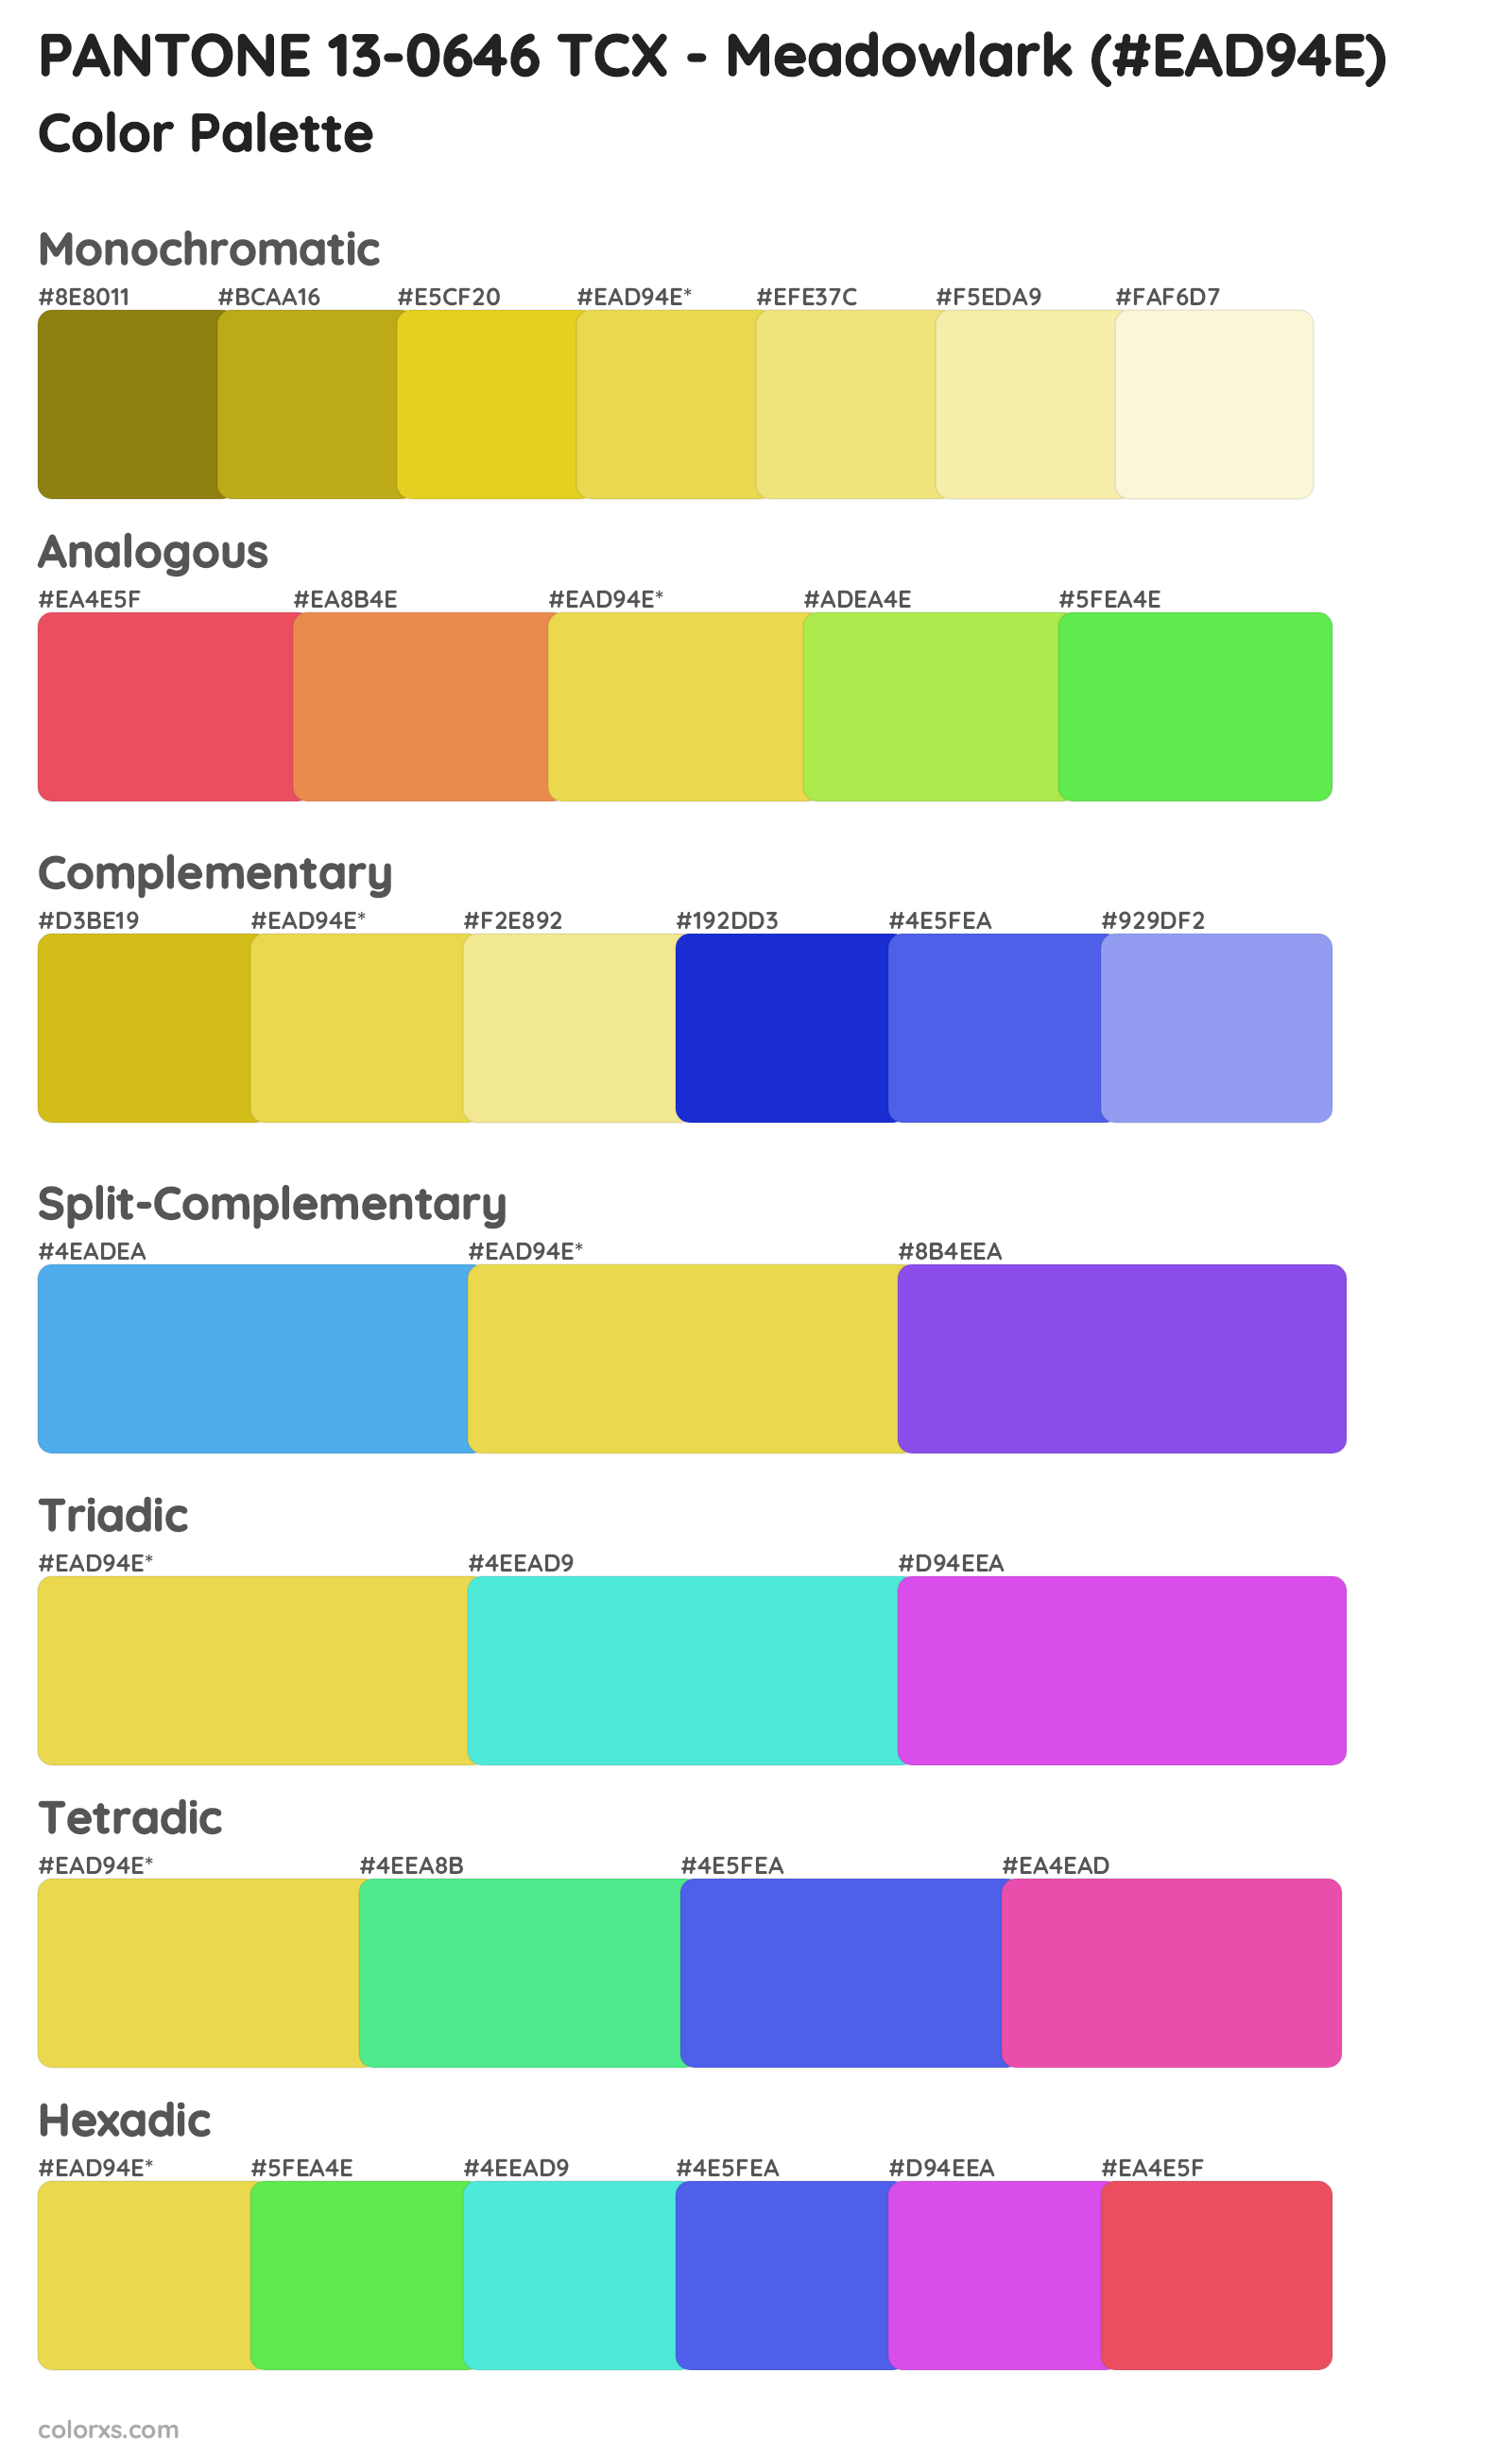 PANTONE 13-0646 TCX - Meadowlark Color Scheme Palettes